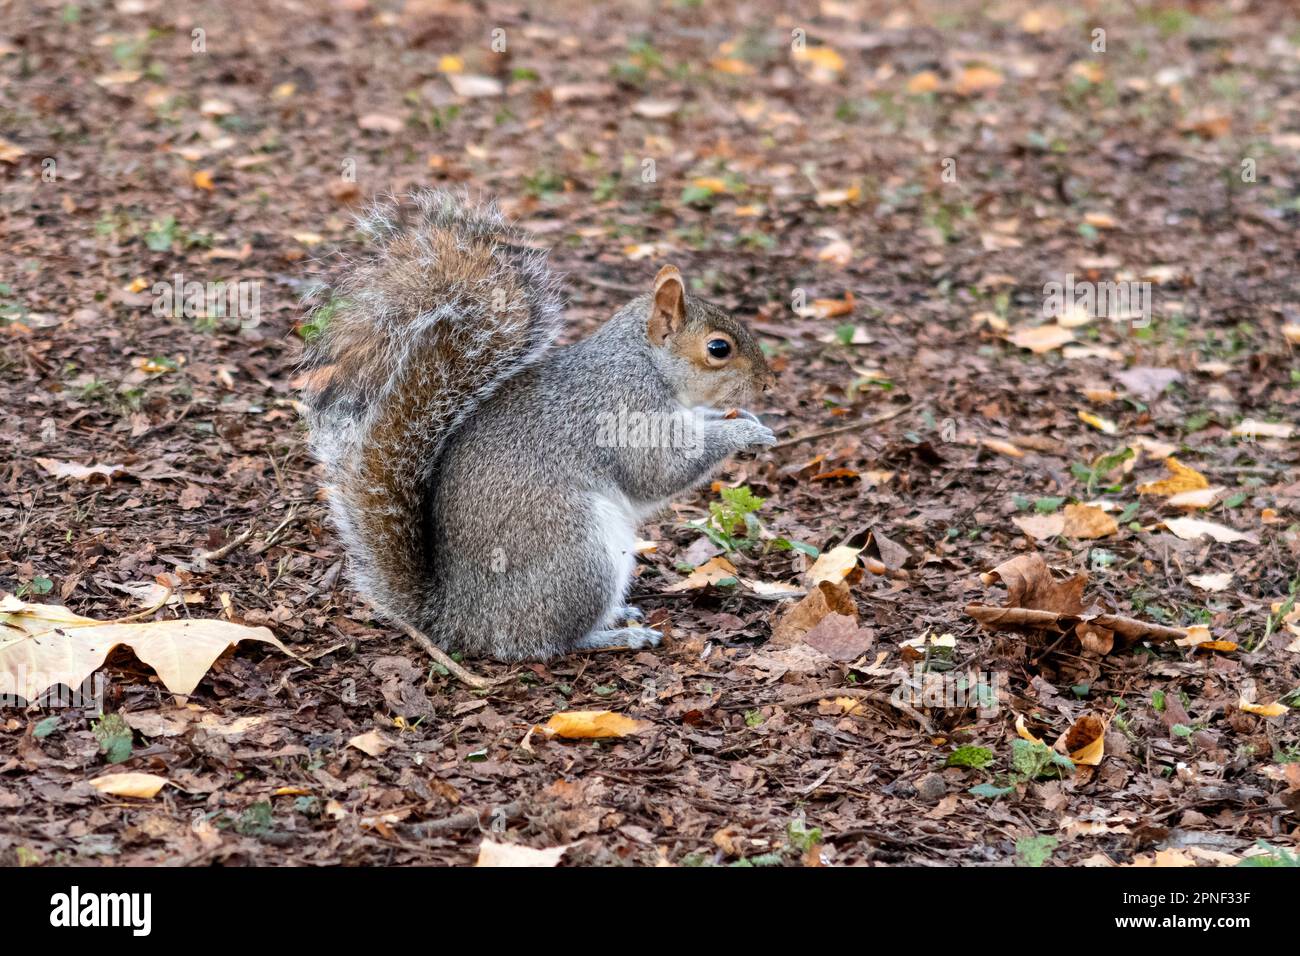 Östliches graues Eichhörnchen, graues Eichhörnchen (Sciurus carolinensis), sitzt auf dem Boden und knabbert eine Nuss, Seitenansicht, Großbritannien, England, London Stockfoto